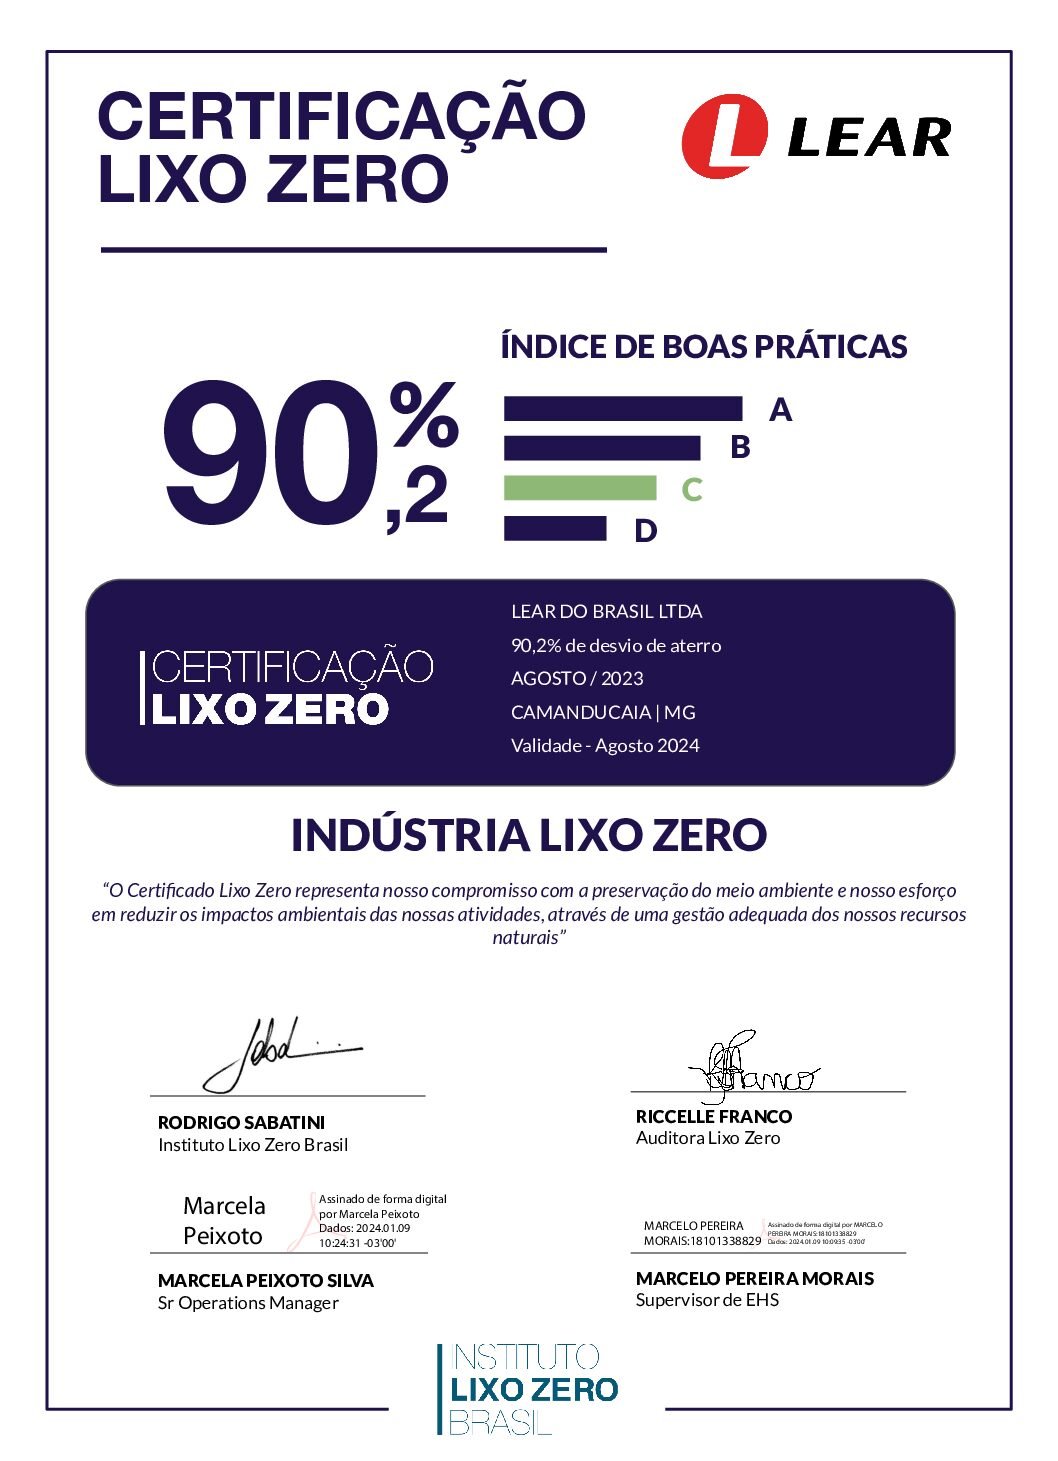 CertificaçãoLixoZero_Lear_Camanducaia_MG_Agosto_2023 ( assinado